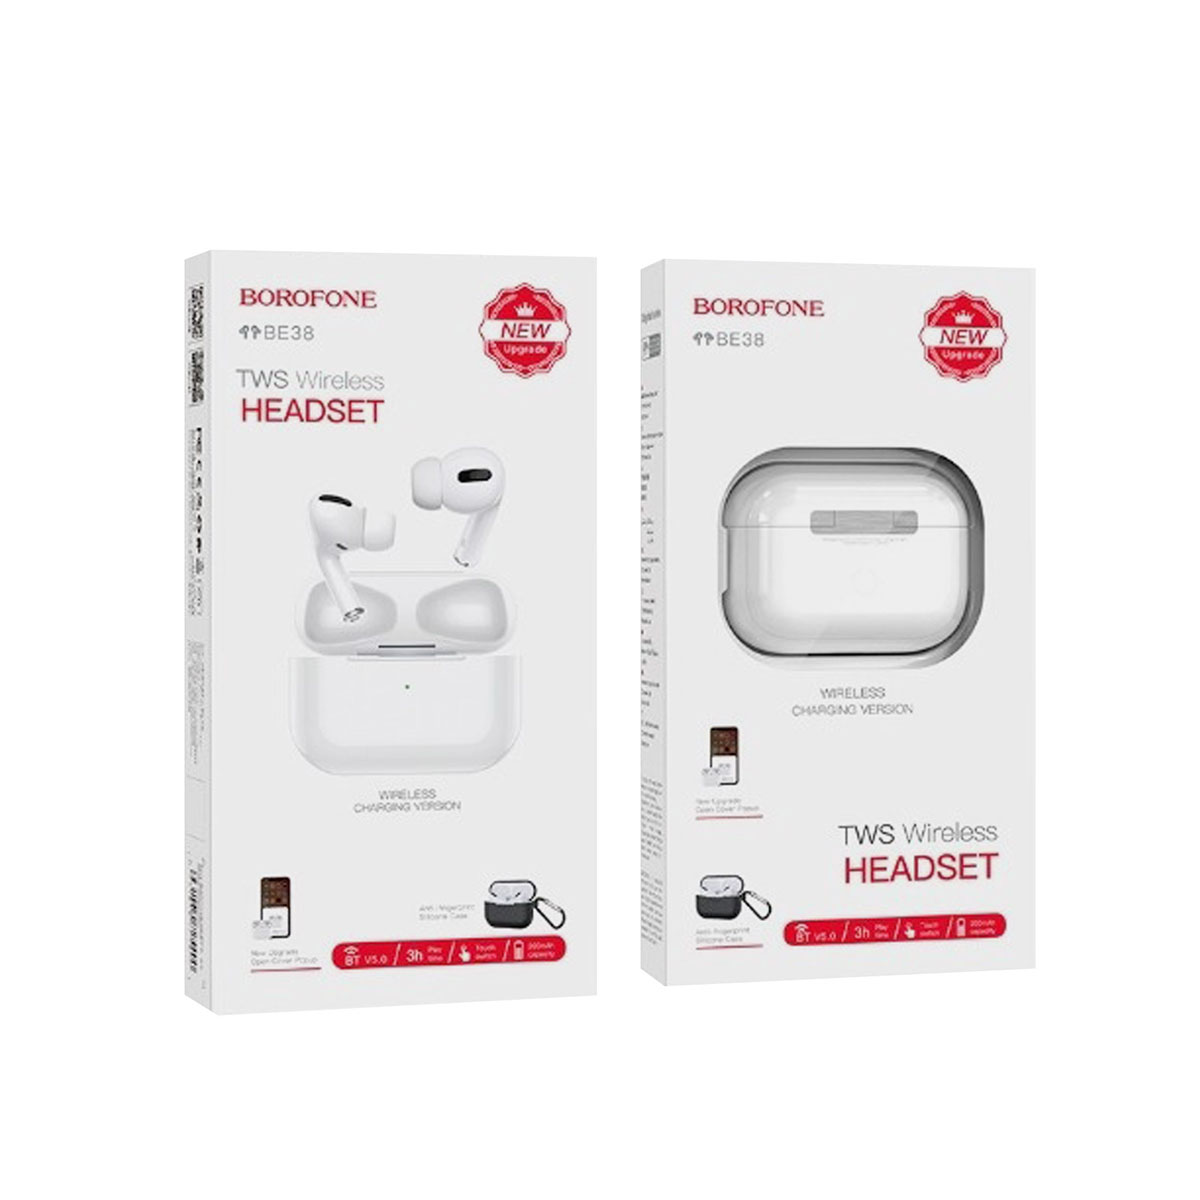 Гарнитура (наушники с микрофоном) беспроводная, BOROFONE BE38 TWS Wireless Headset Pods Pro, цвет белый